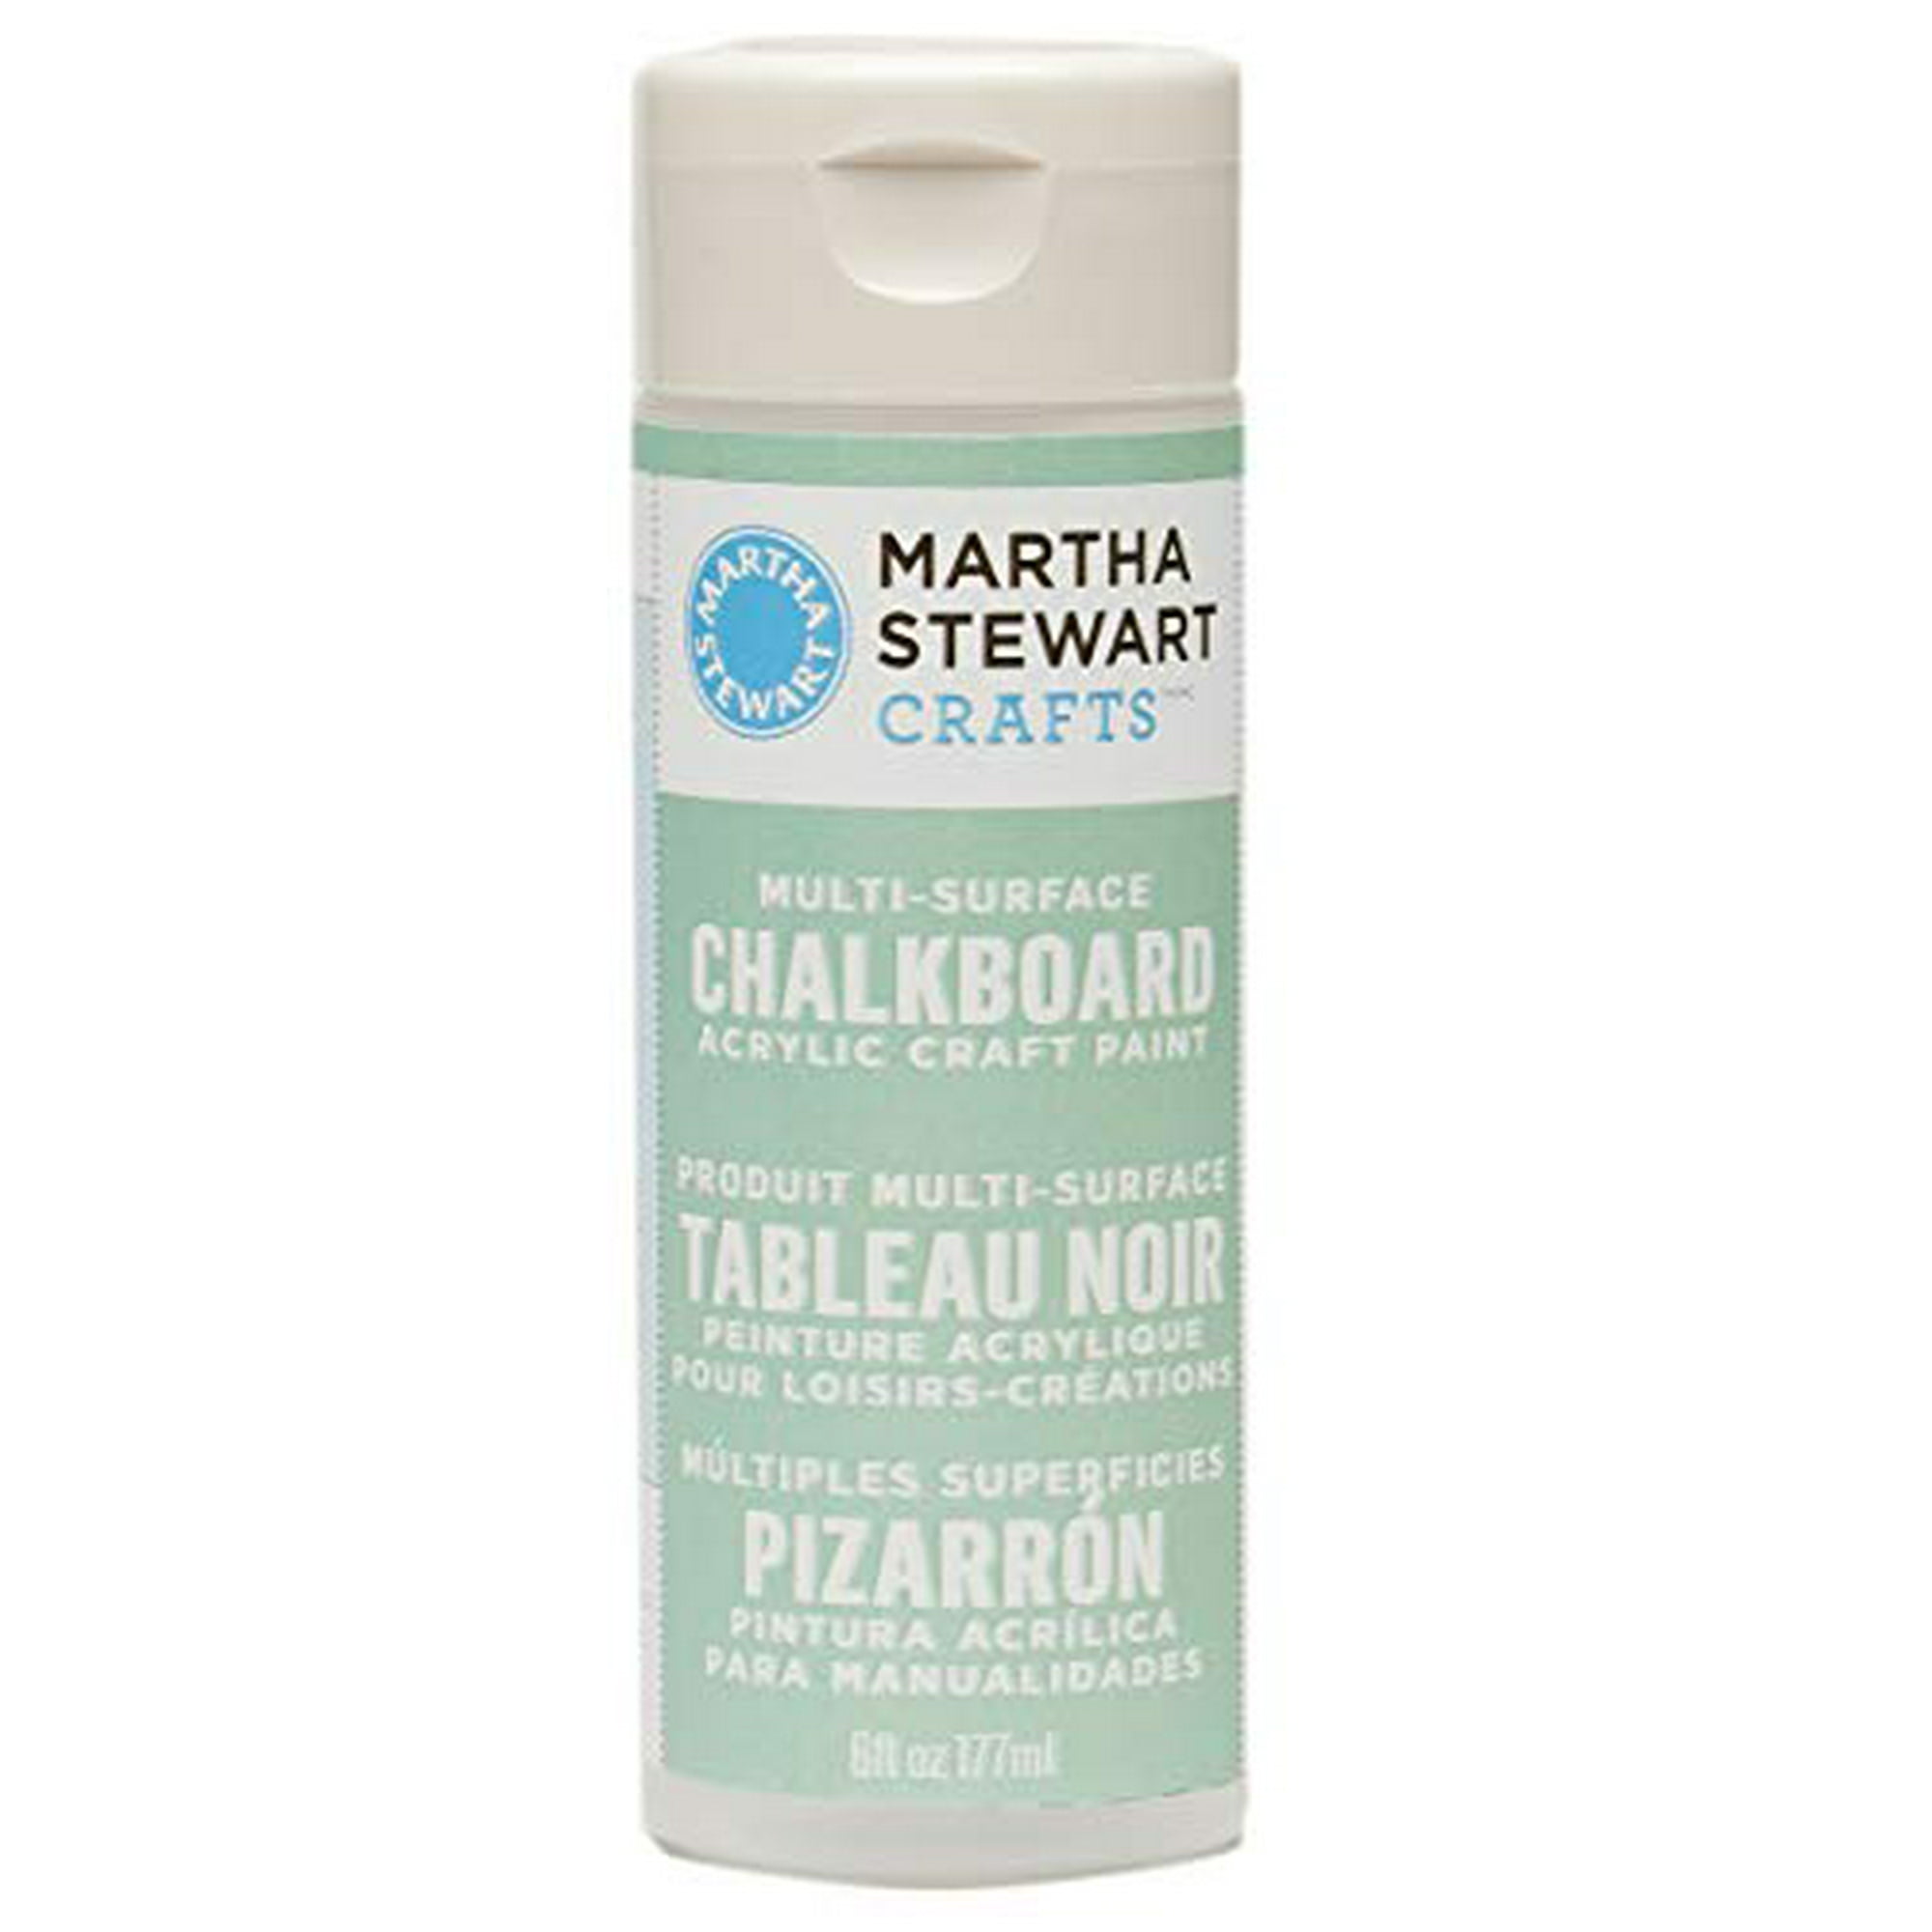 Martha Stewart Chalkboard Acrylic Craft Paint 6oz Green